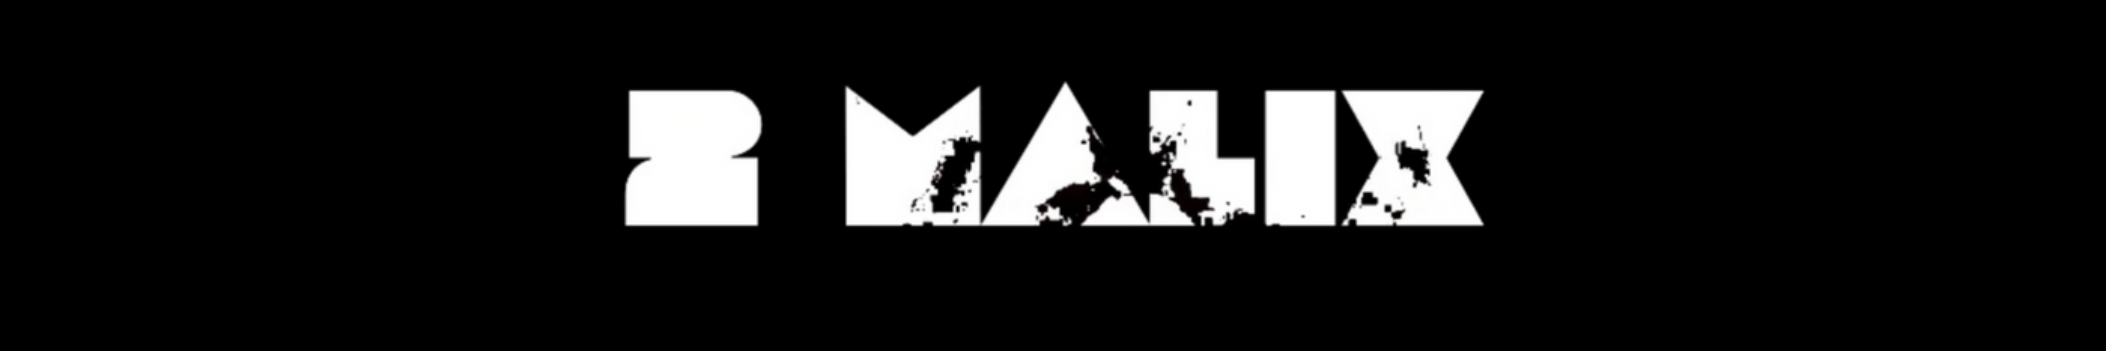 2 Malix